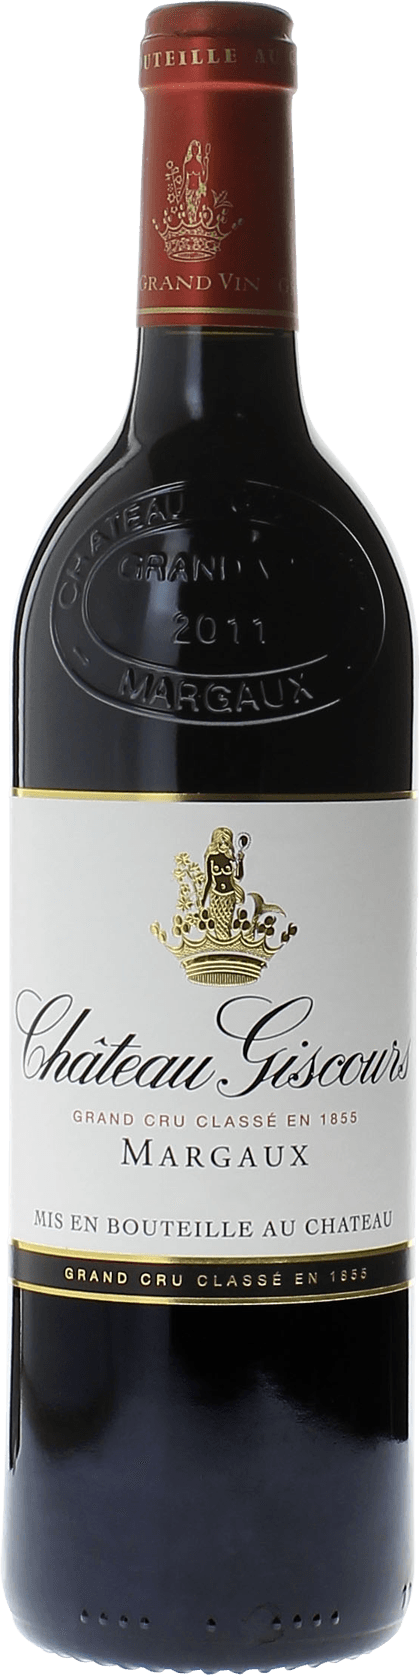 Giscours 2005 3me Grand cru class Margaux, Bordeaux rouge